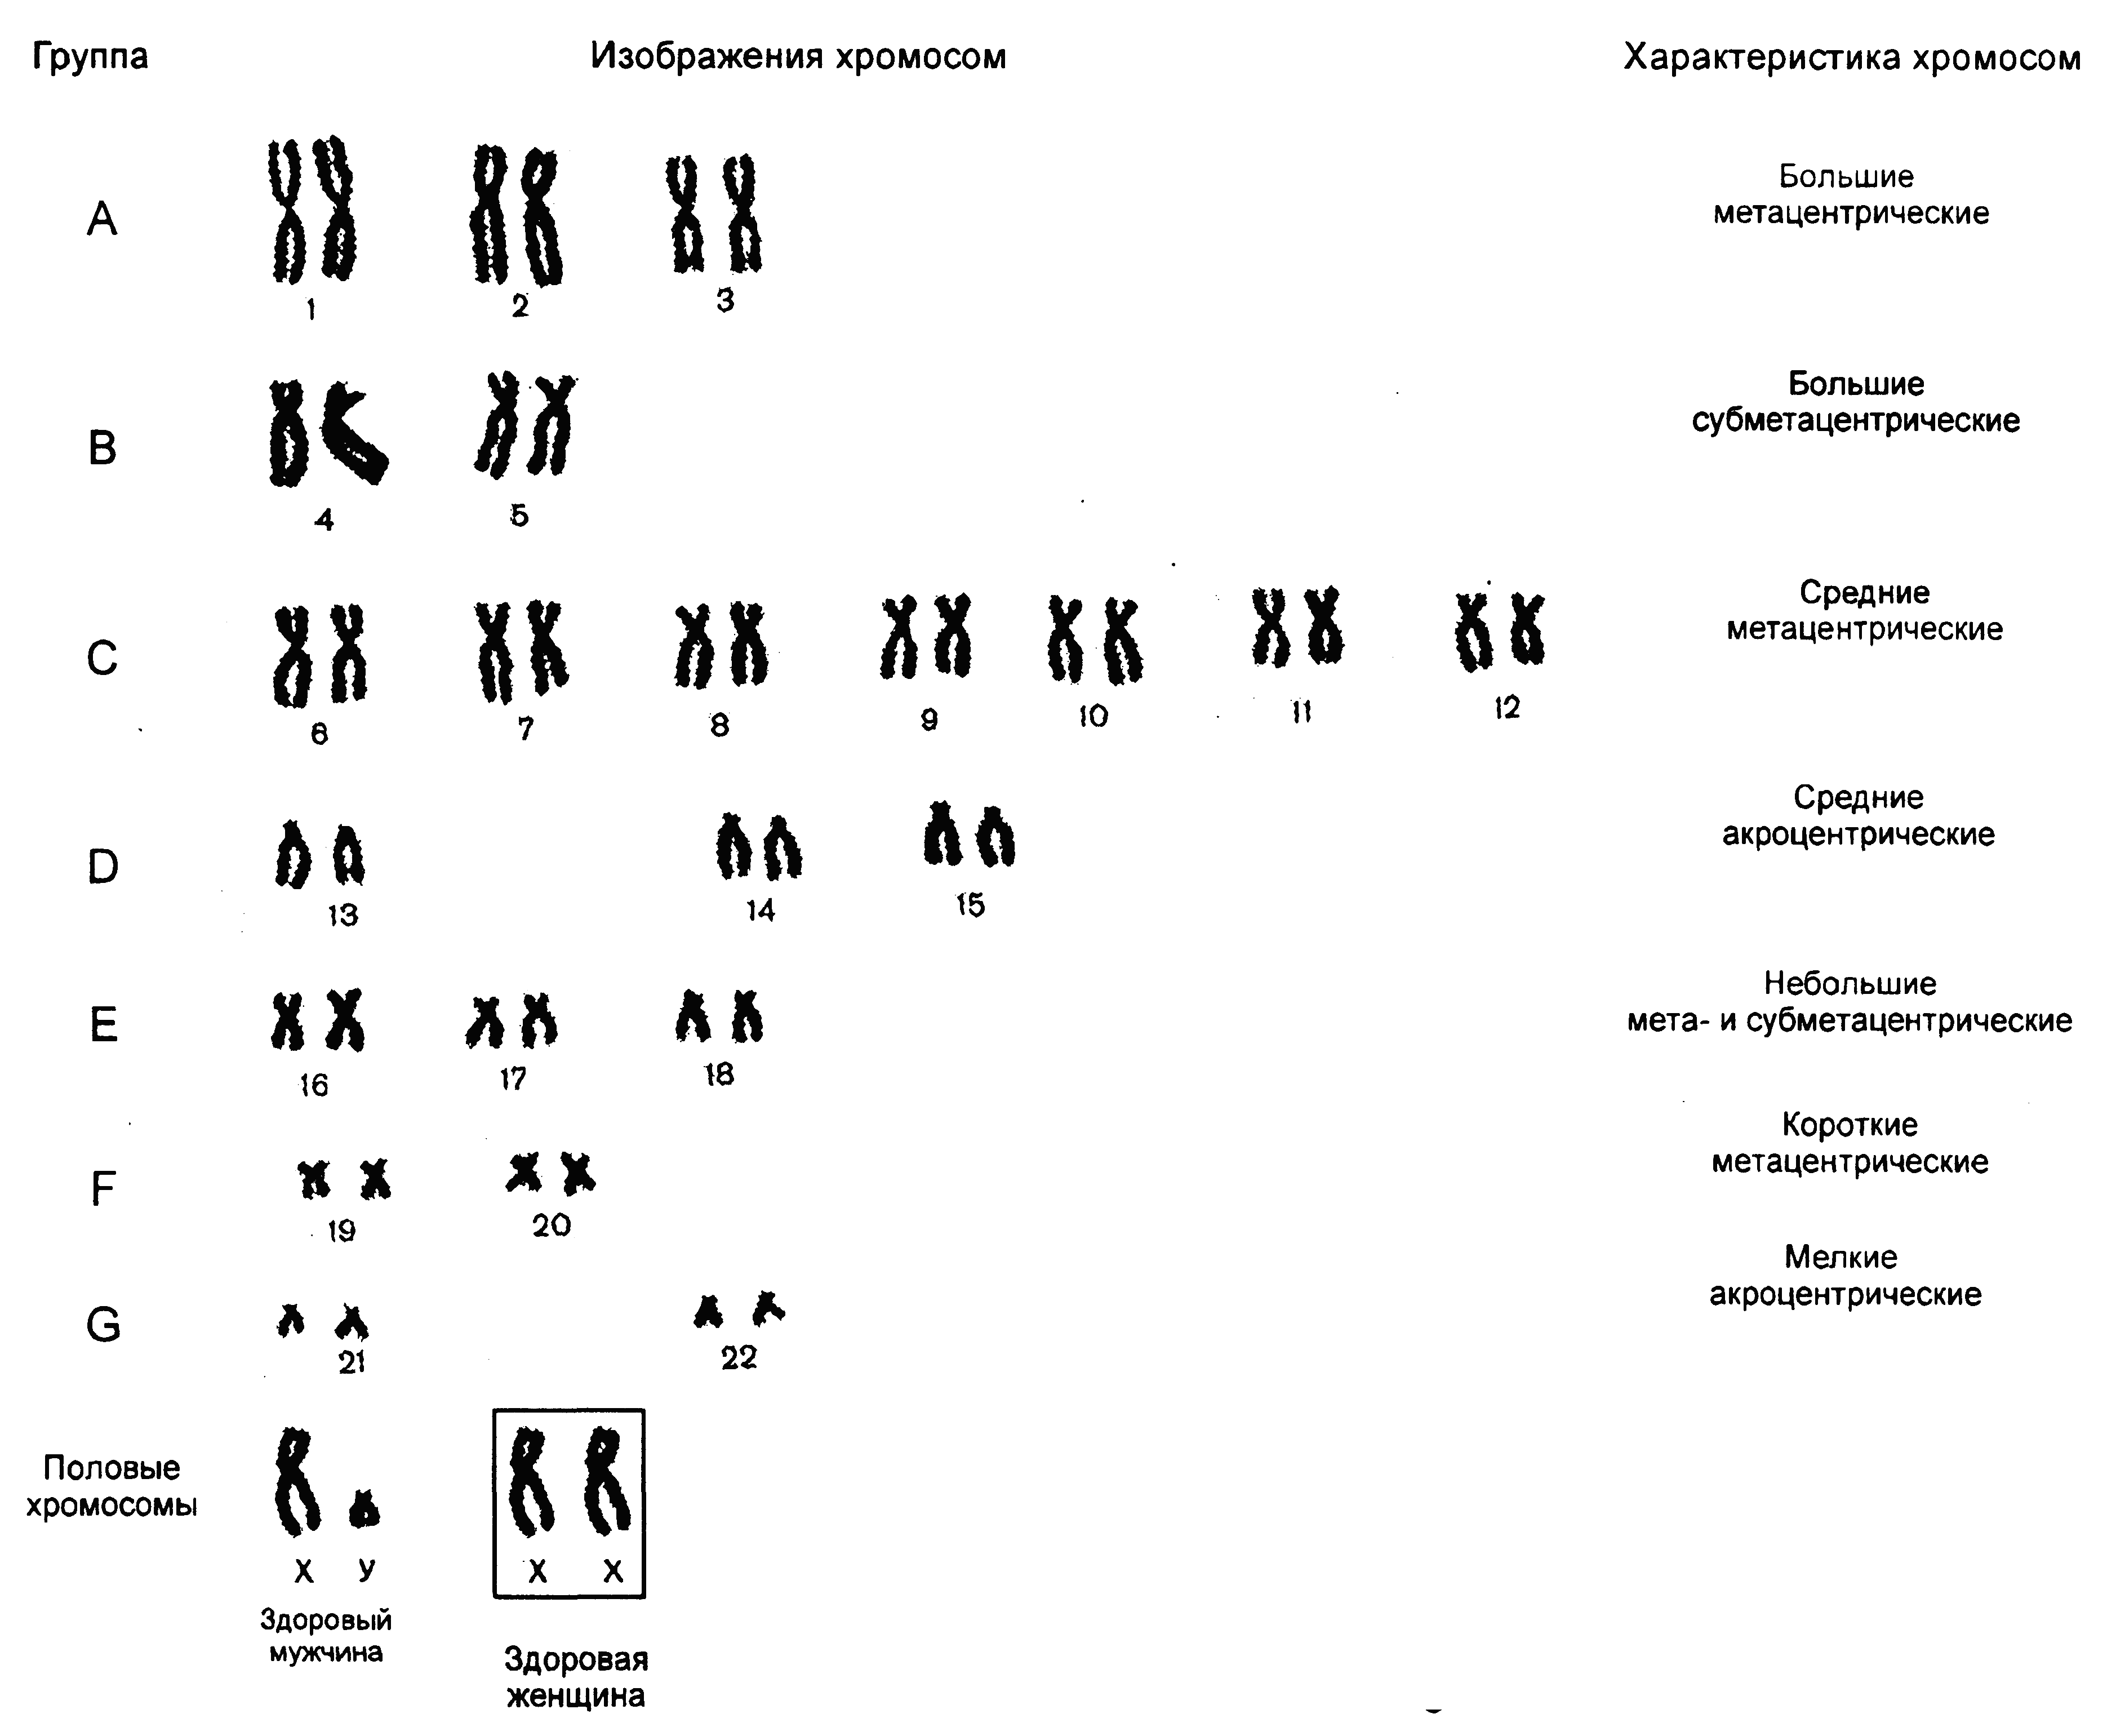 Хромосом группы d. Метацентрические хромосомы в кариотипе человека. Кариограмма и кариотип человека. Кариограмма и идиограмма. Идиограмма кариотипа.